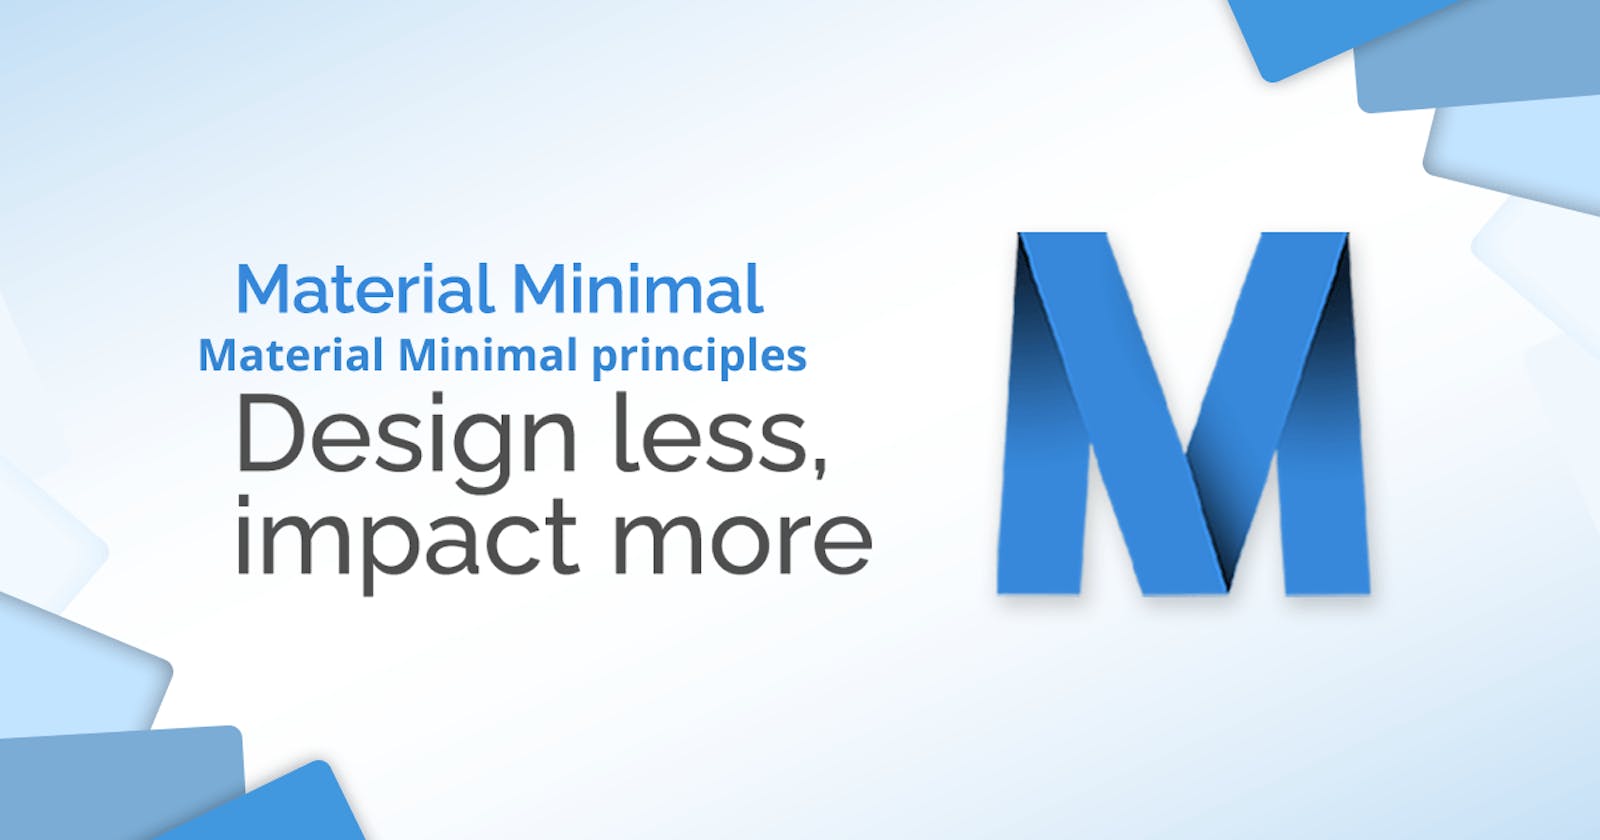 WebDesign Tutorial - Material Minimal principles